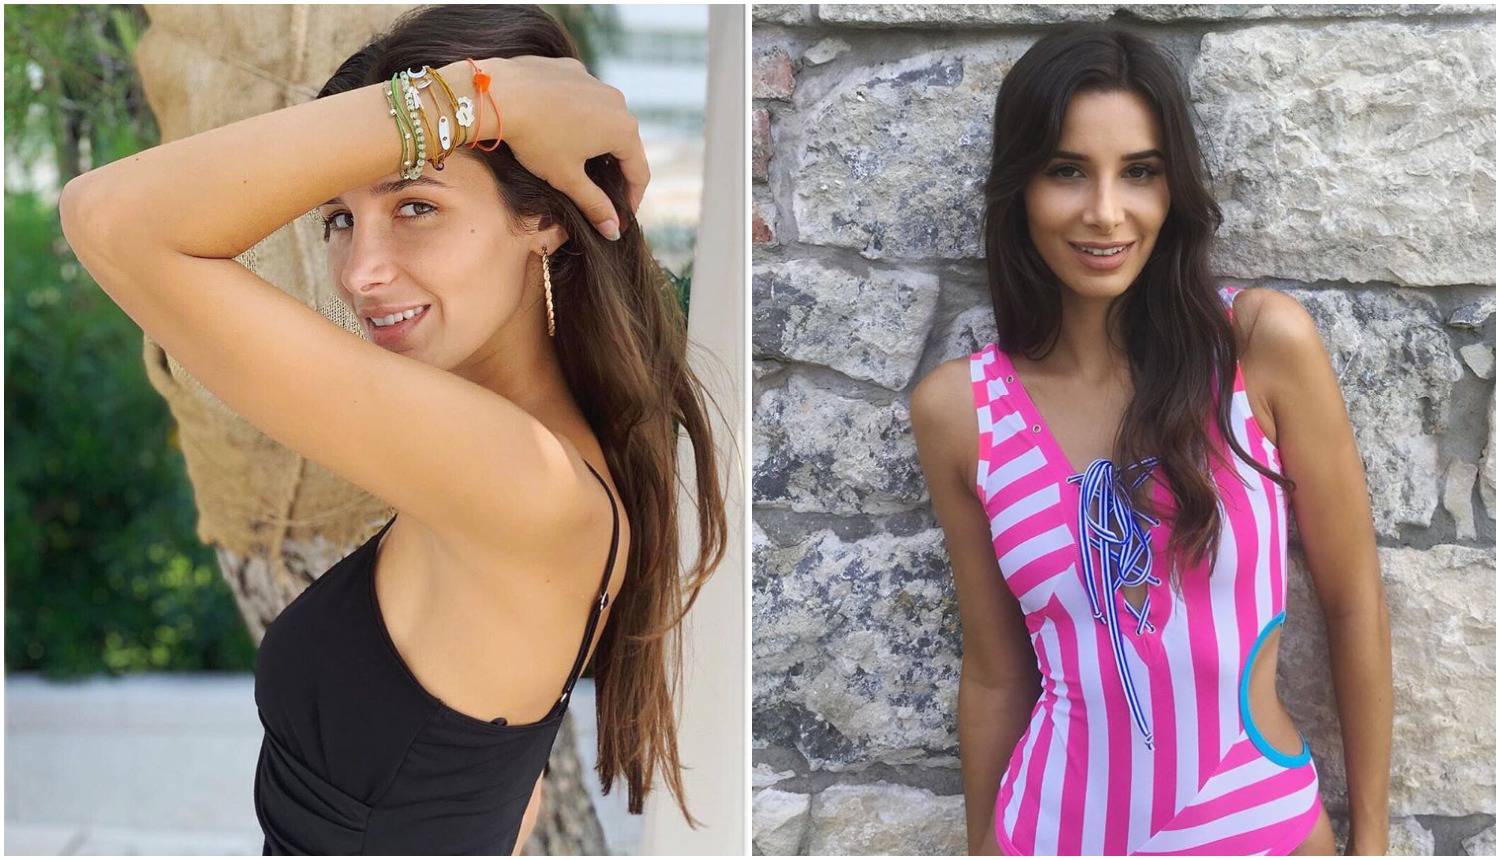 Nova Miss Hrvatske ima 22 godine i studira novinarstvo